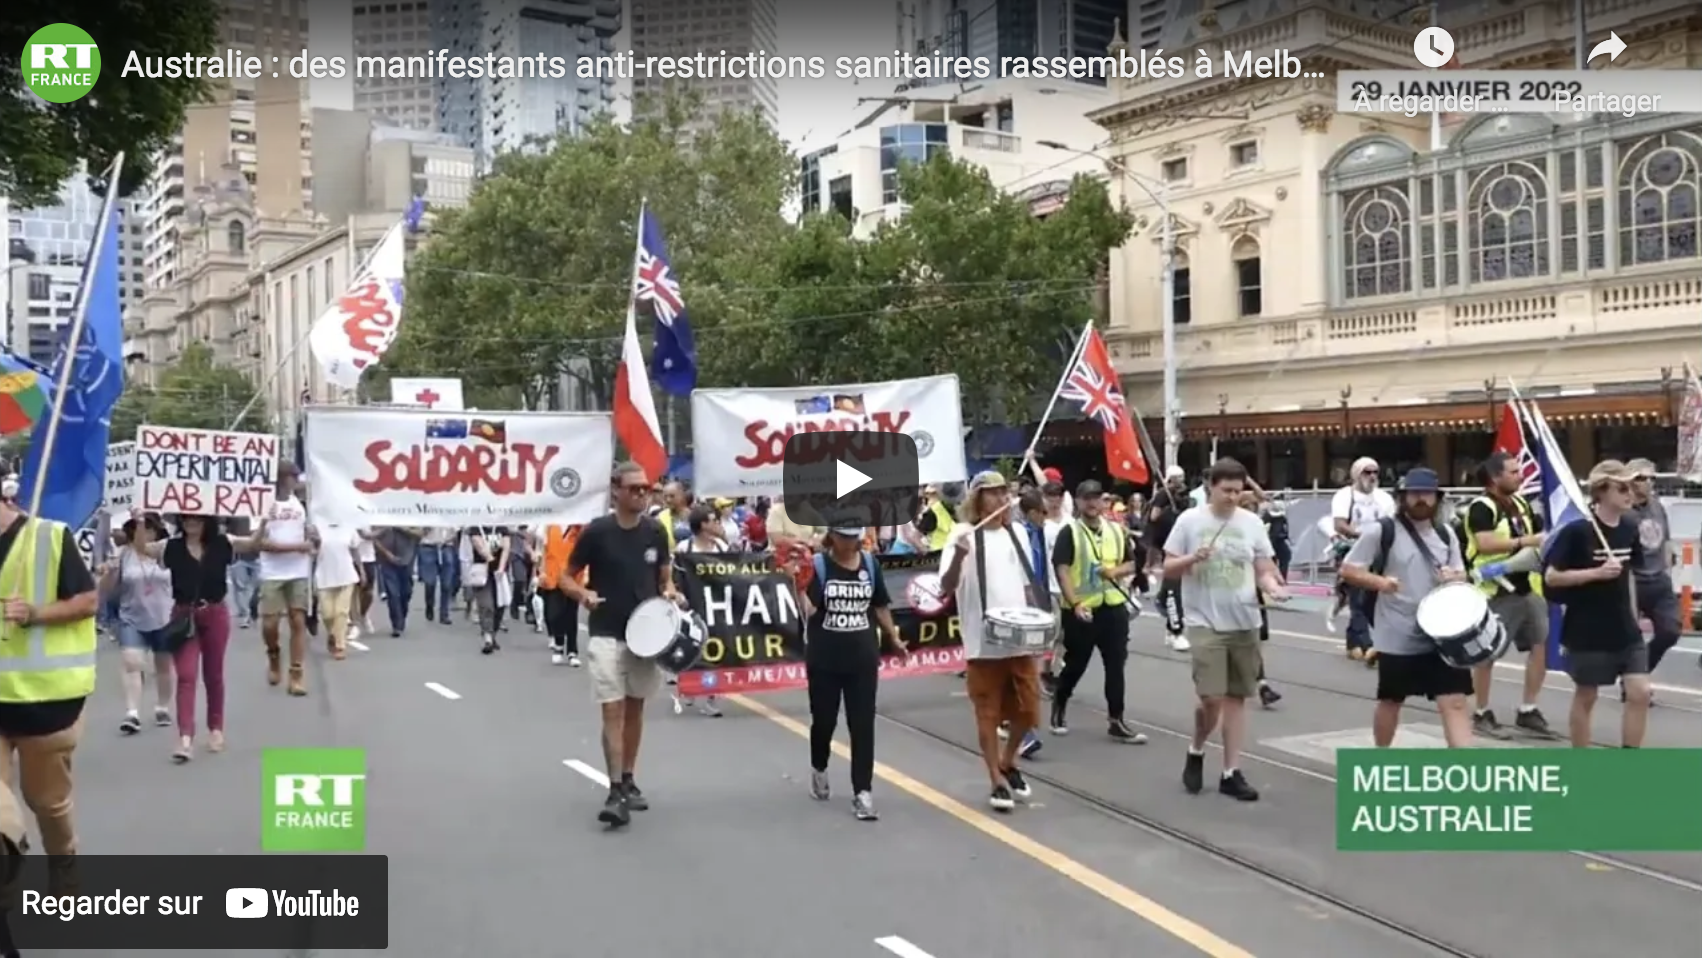 Australie : des manifestants anti-restrictions sanitaires rassemblés à Melbourne